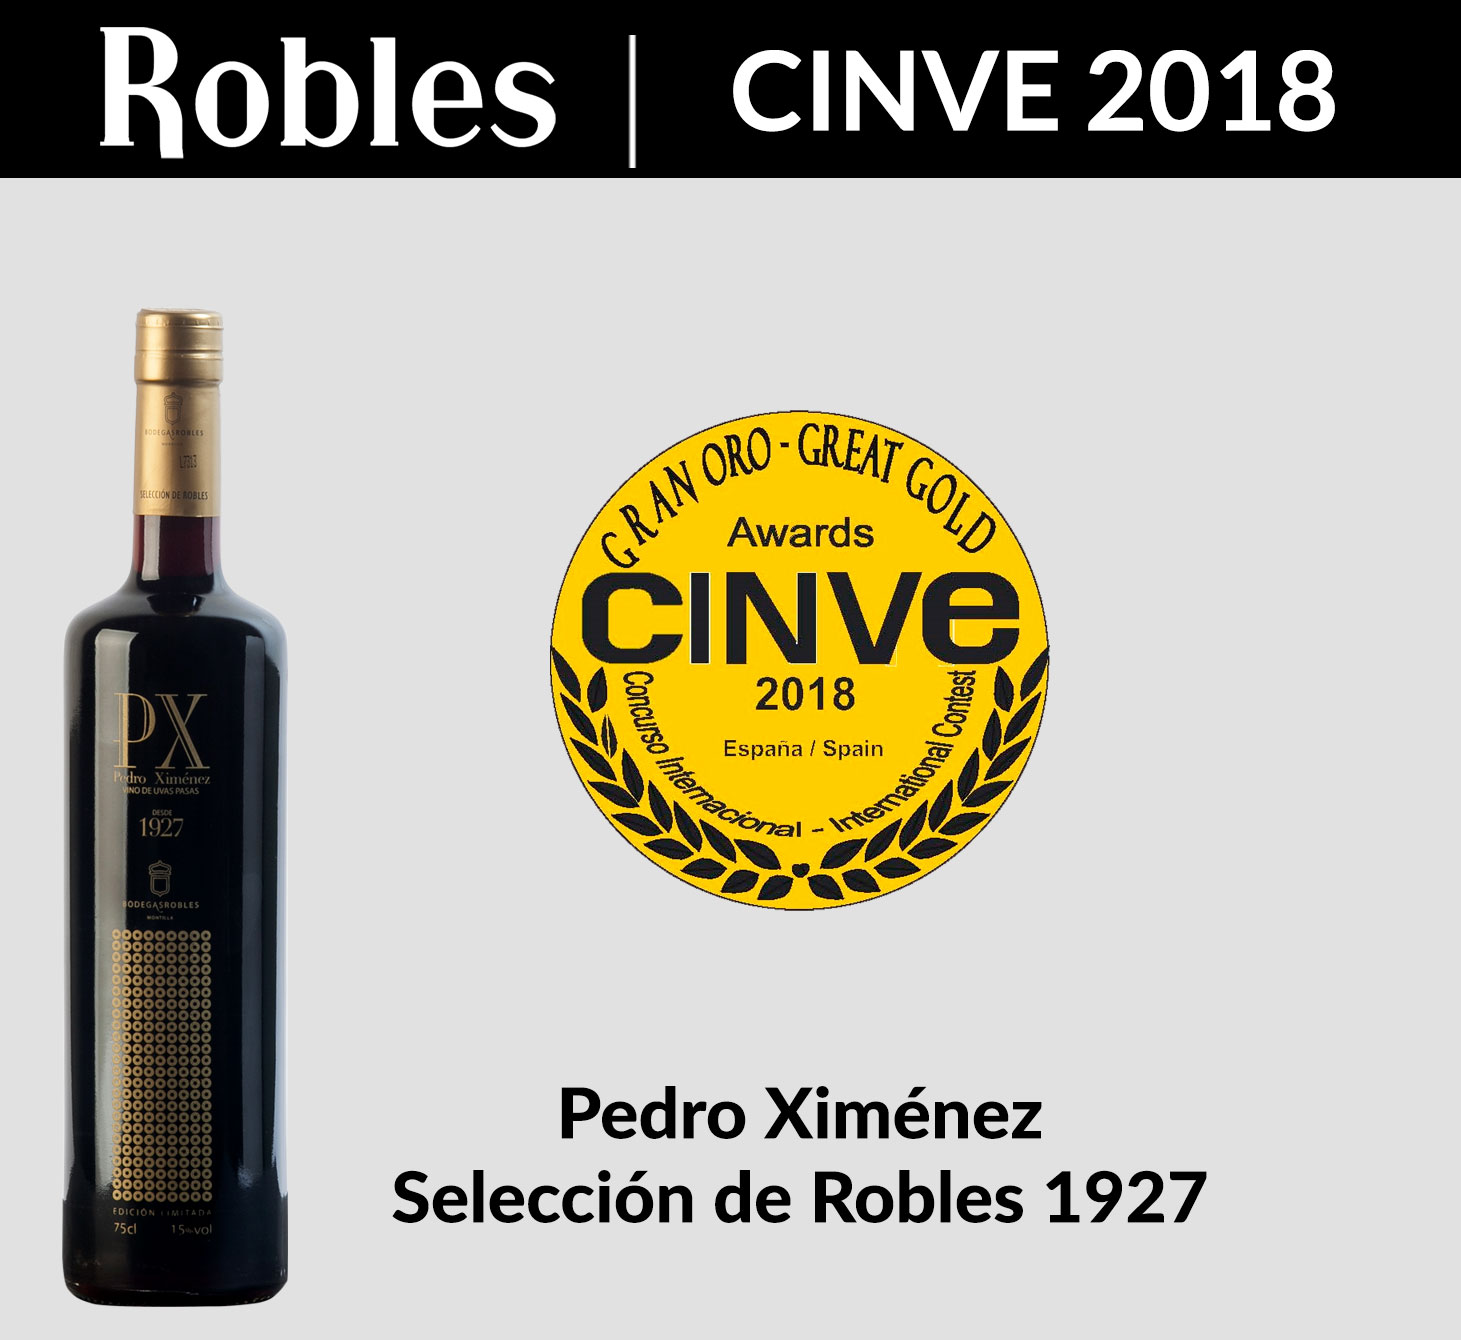 Gran Oro en CINVE 2018 para Pedro Ximénez Selección 1927